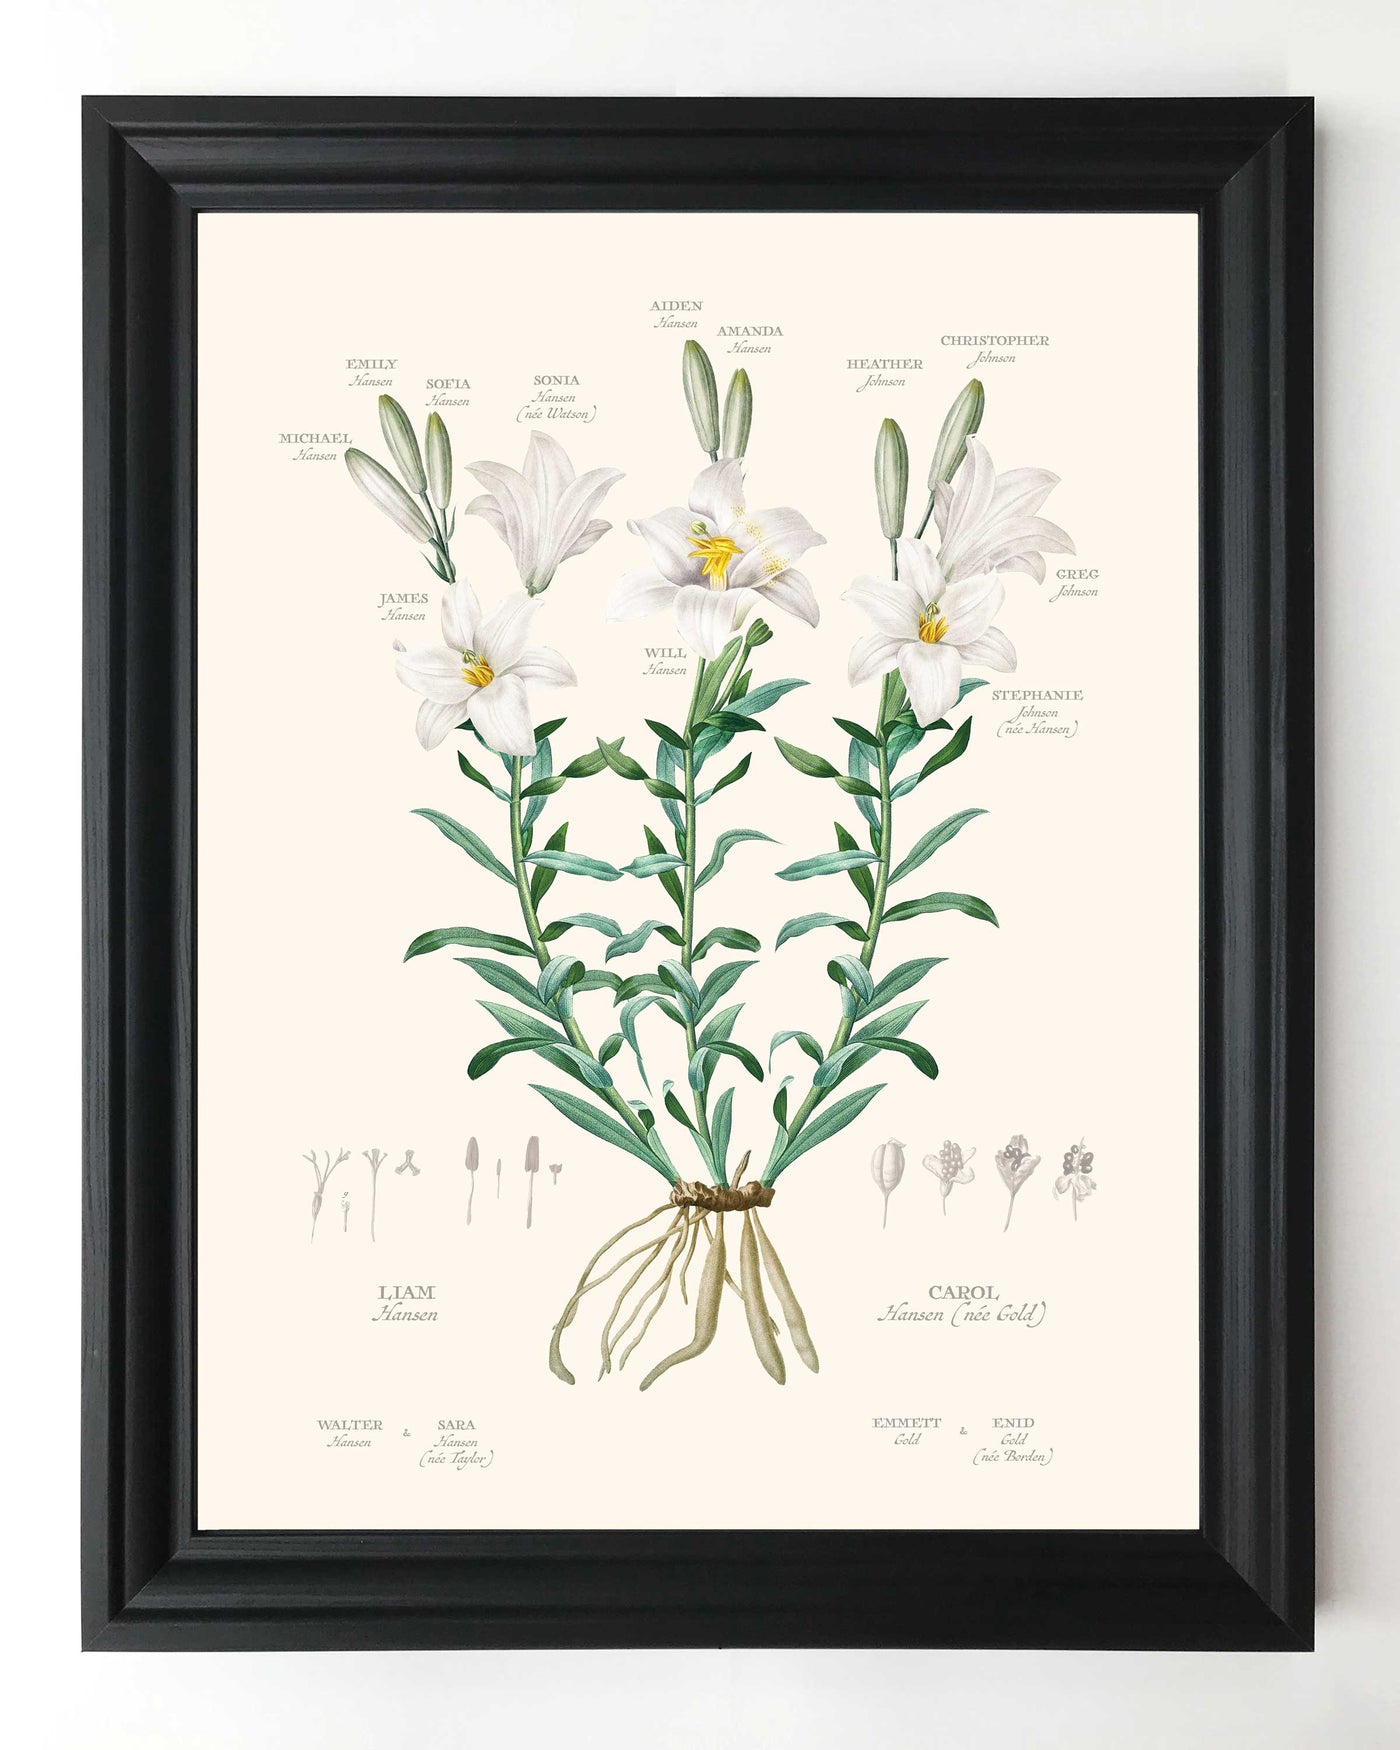 White Lily Family Botanic Family Tree in black frame